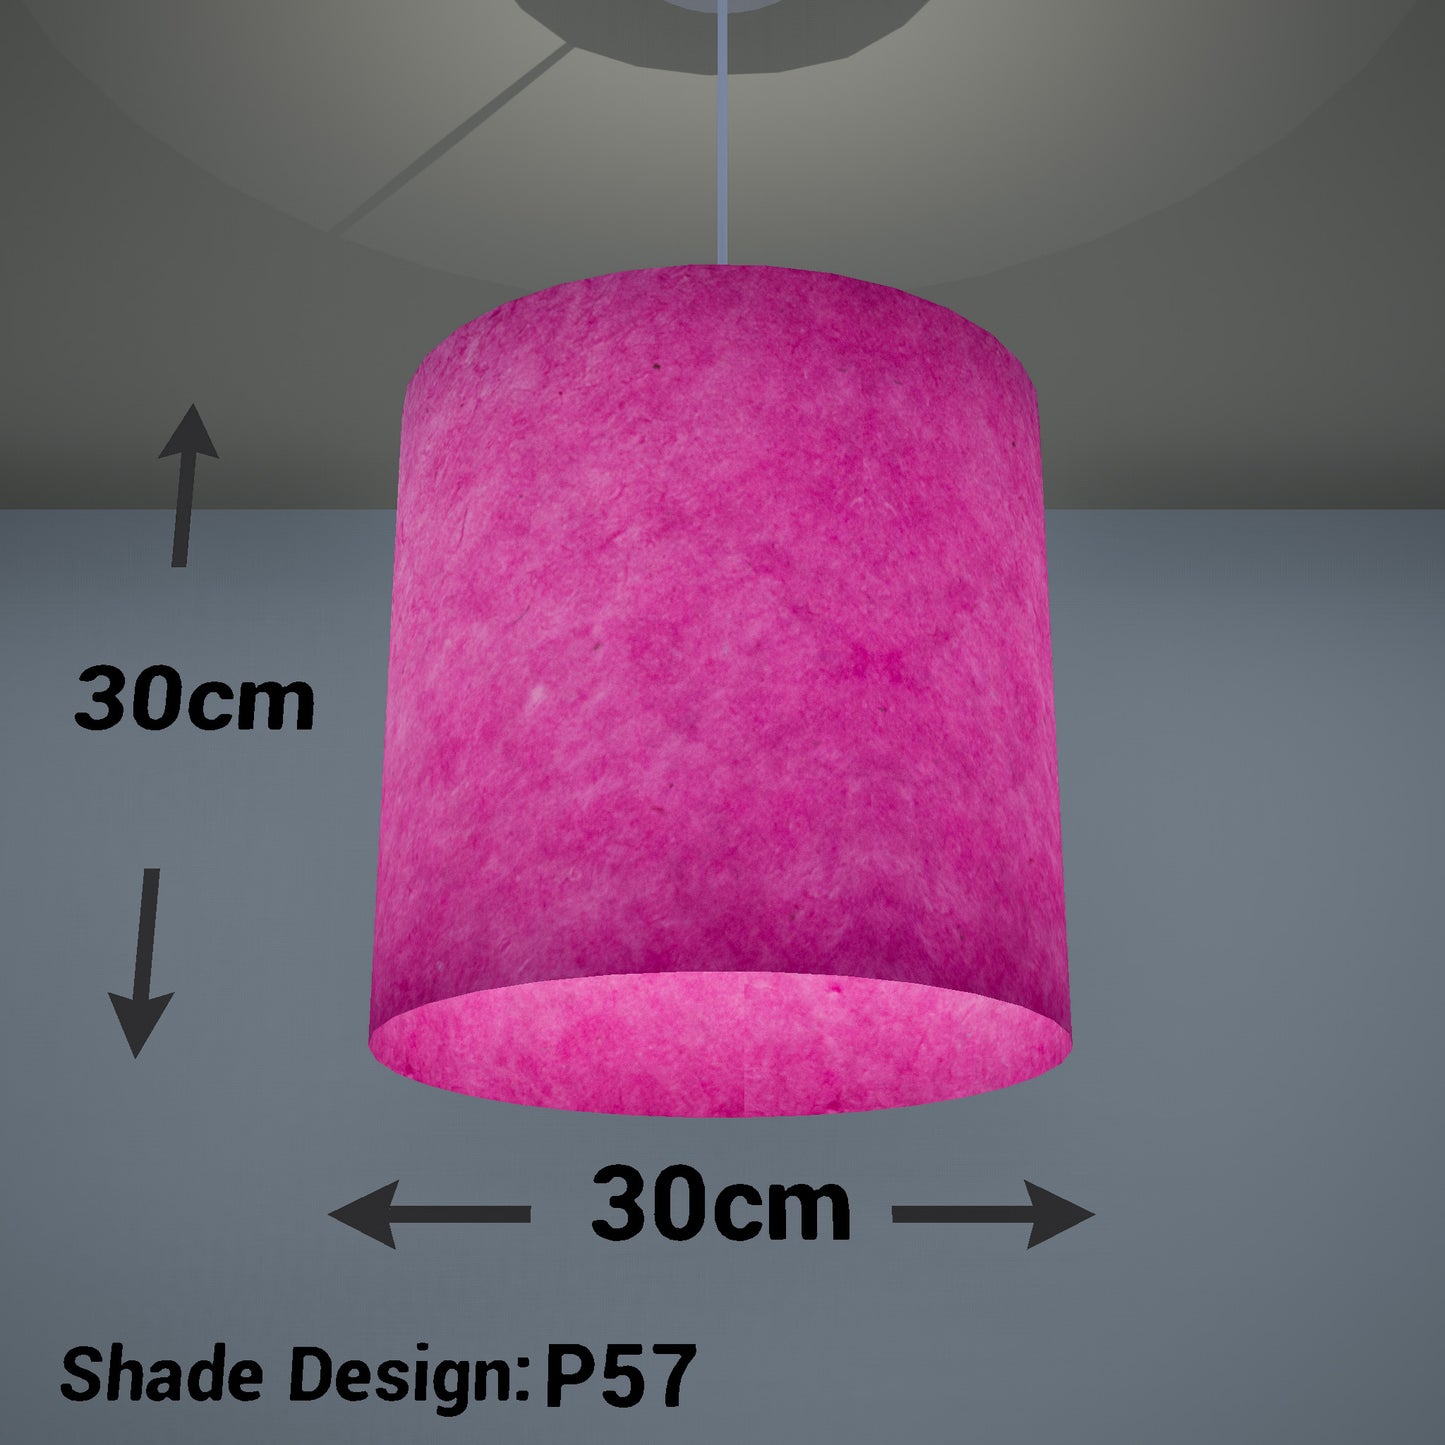 Drum Lamp Shade - P57 - Hot Pink Lokta, 30cm(d) x 30cm(h)